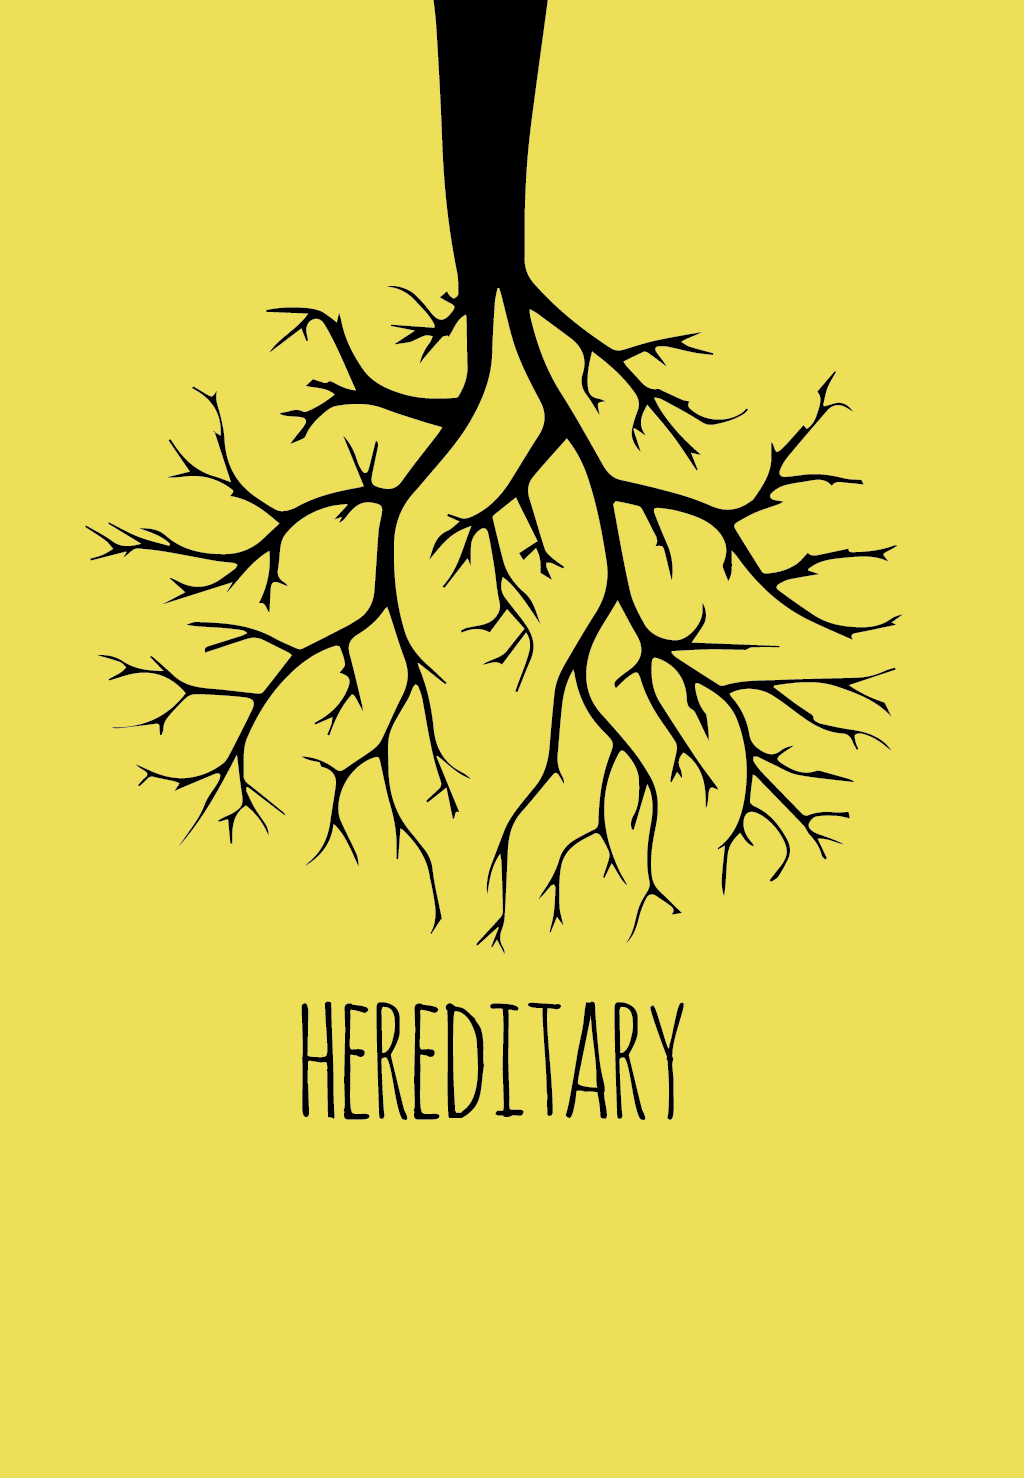 Hereditary Film Poster